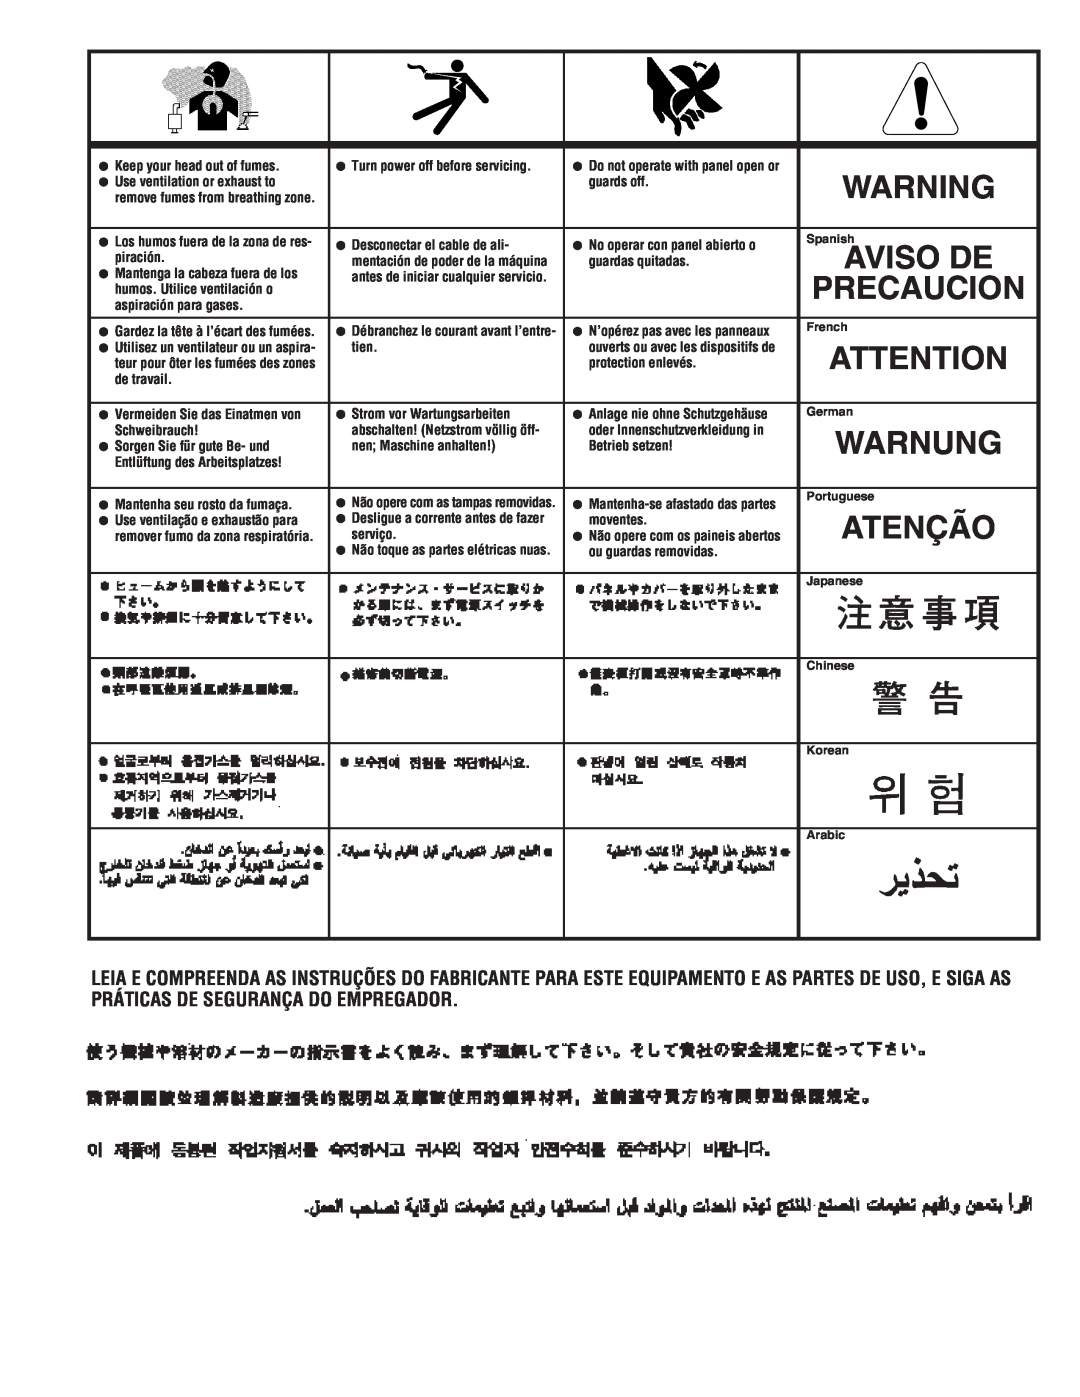 Lincoln Electric IM857 manual Warnung, Atenção, Precaucion, Aviso De 